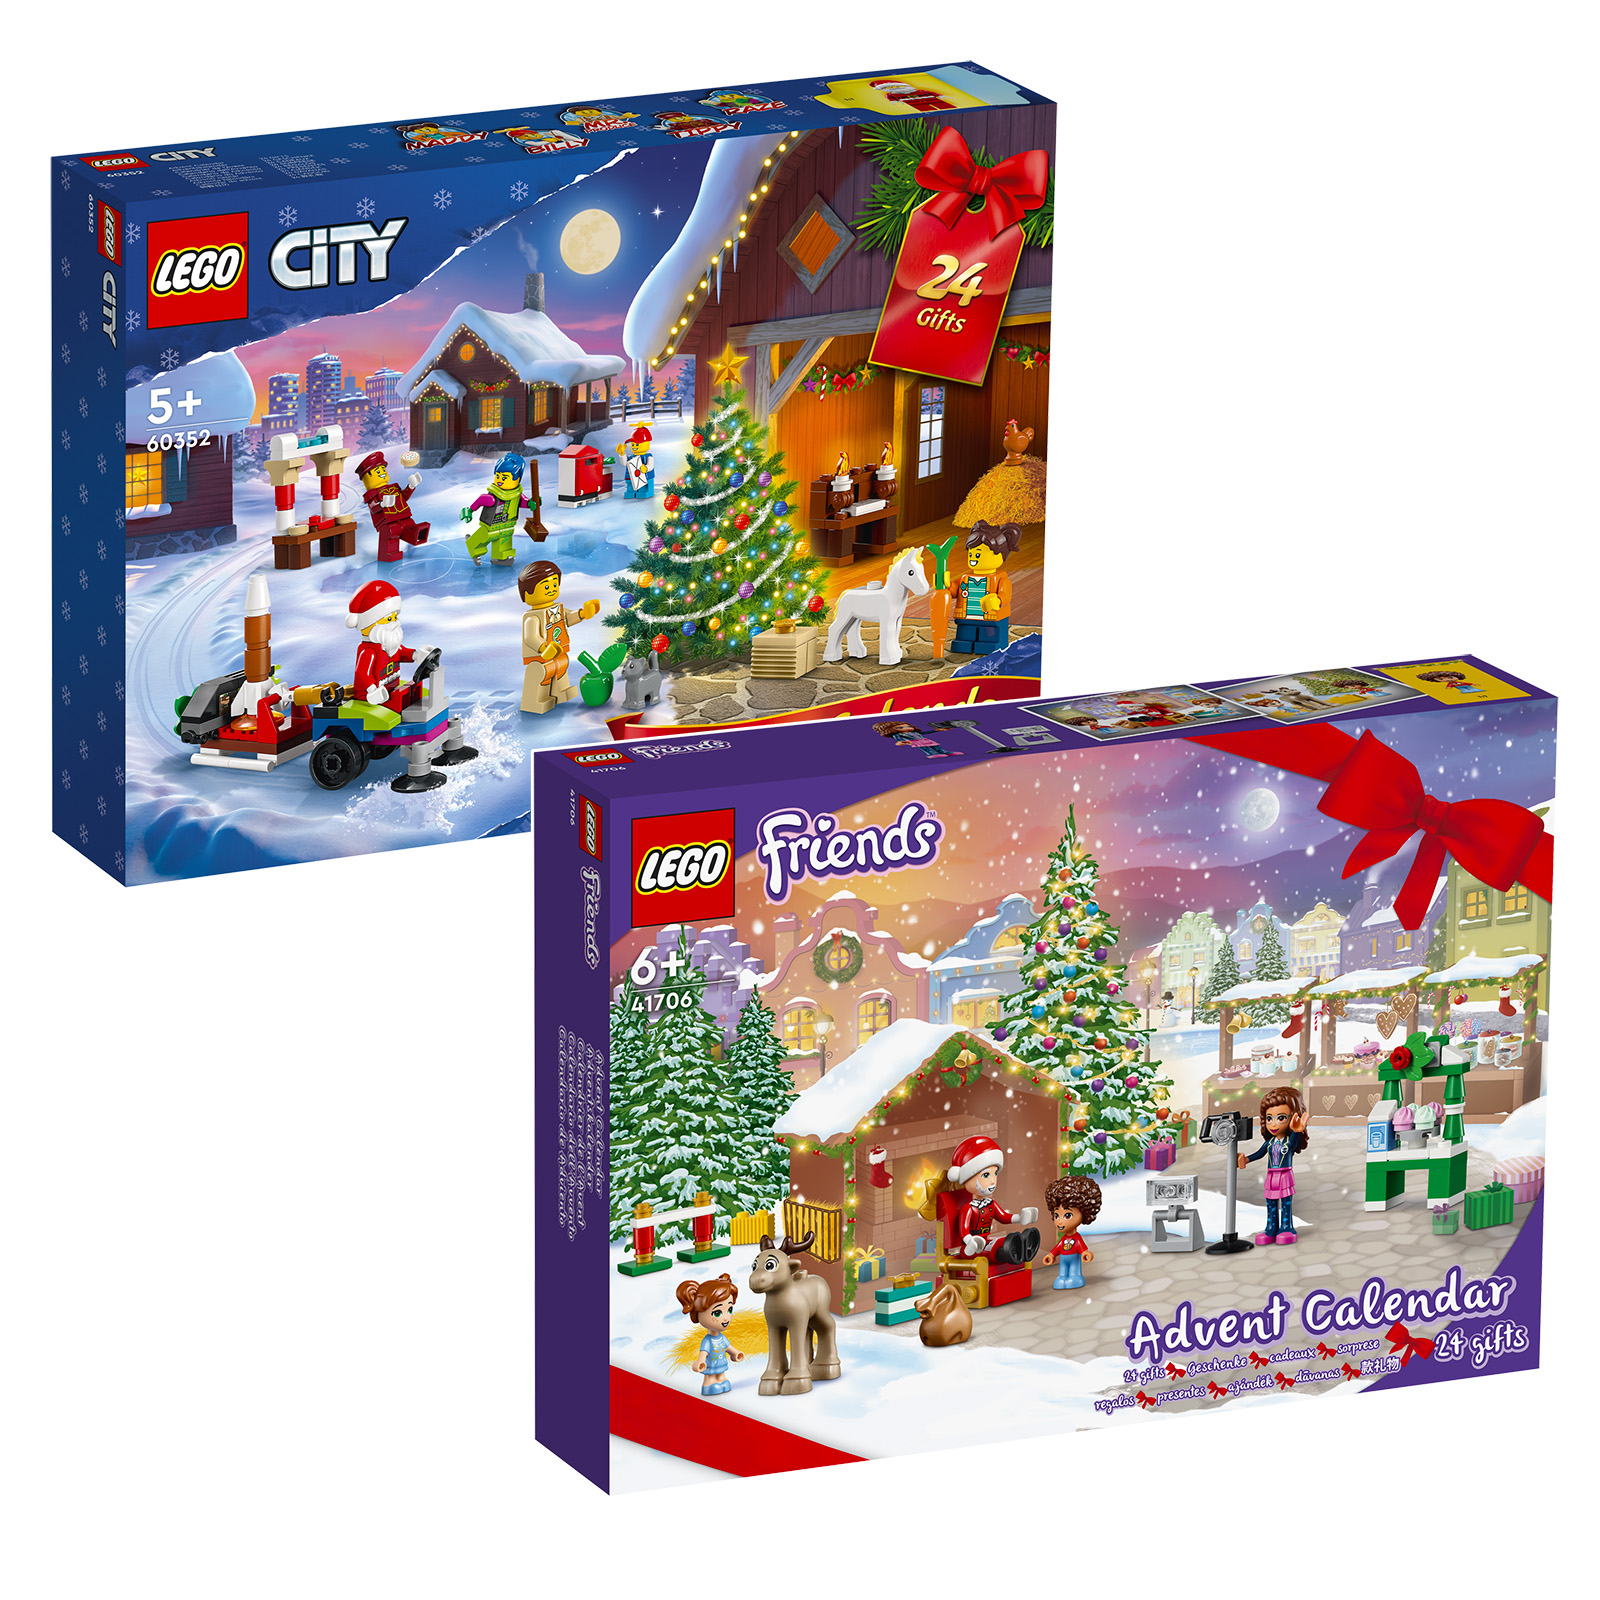 Lịch Advent 2022 LEGO CITY & Friends: bộ này trực tuyến trên Cửa hàng